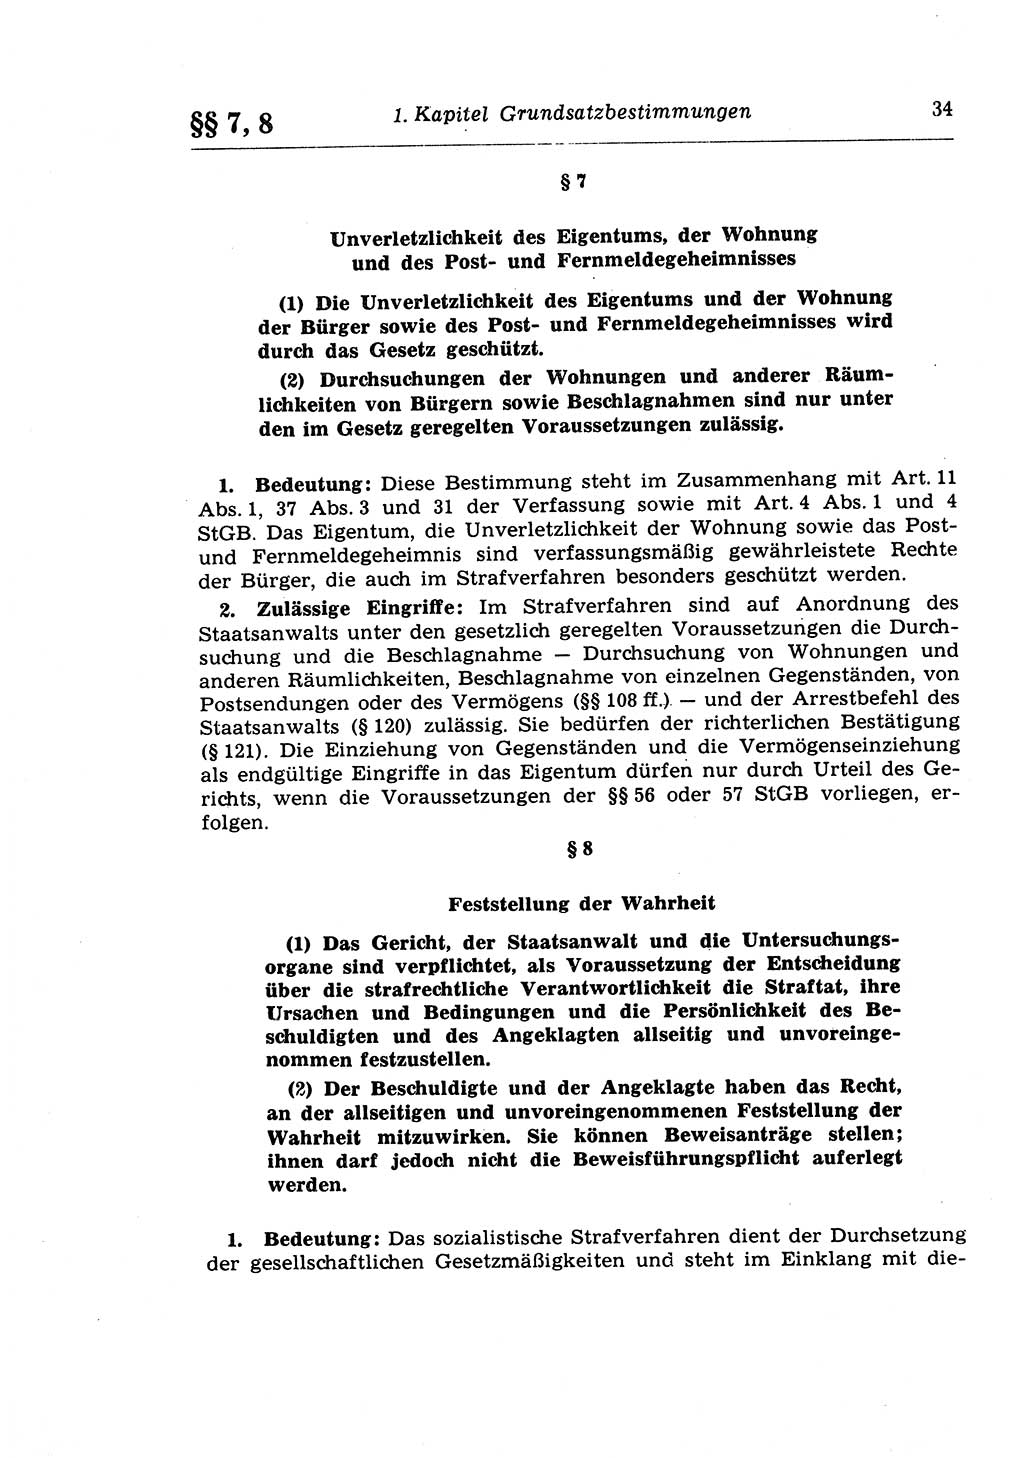 Strafprozeßrecht der DDR (Deutsche Demokratische Republik), Lehrkommentar zur Strafprozeßordnung (StPO) 1968, Seite 34 (Strafprozeßr. DDR Lehrkomm. StPO 19688, S. 34)